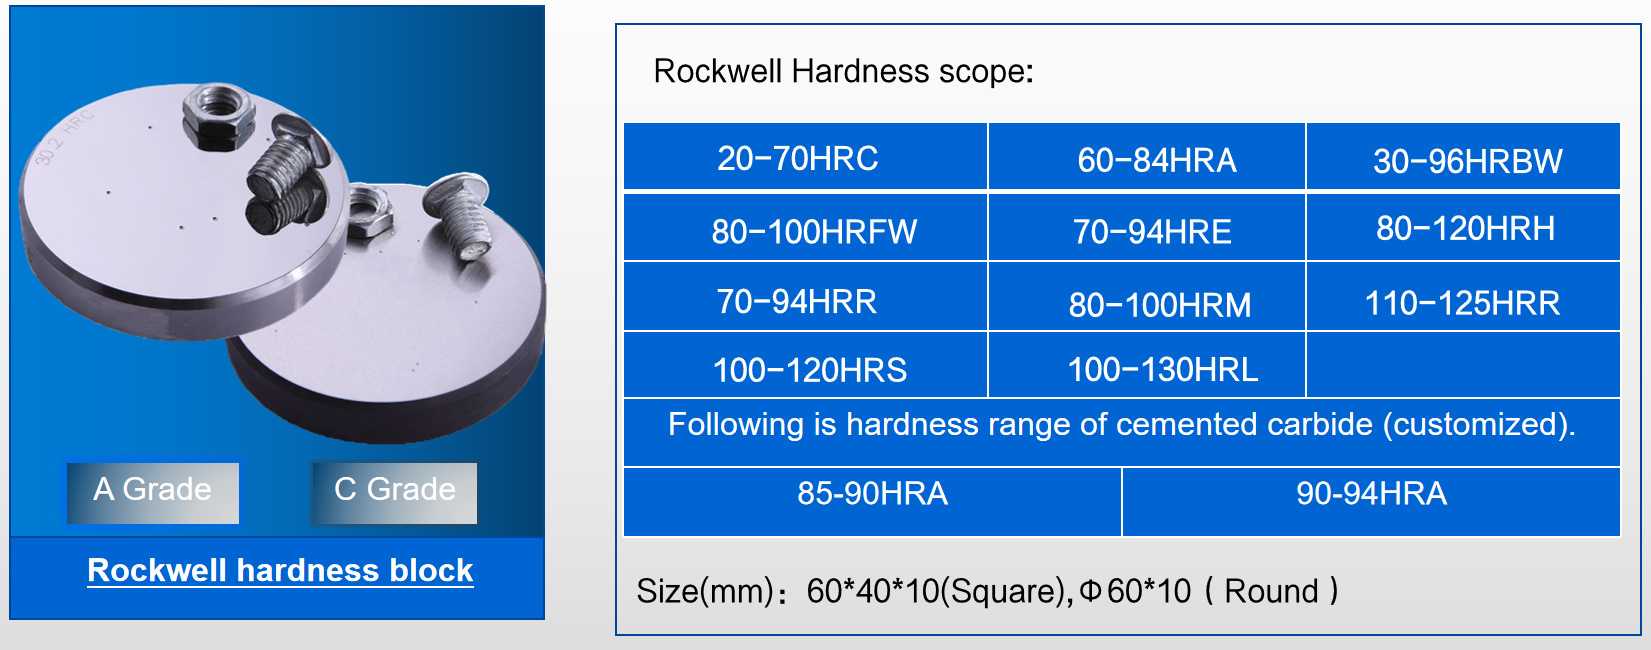 Rockwell Hardness နယ်ပယ်